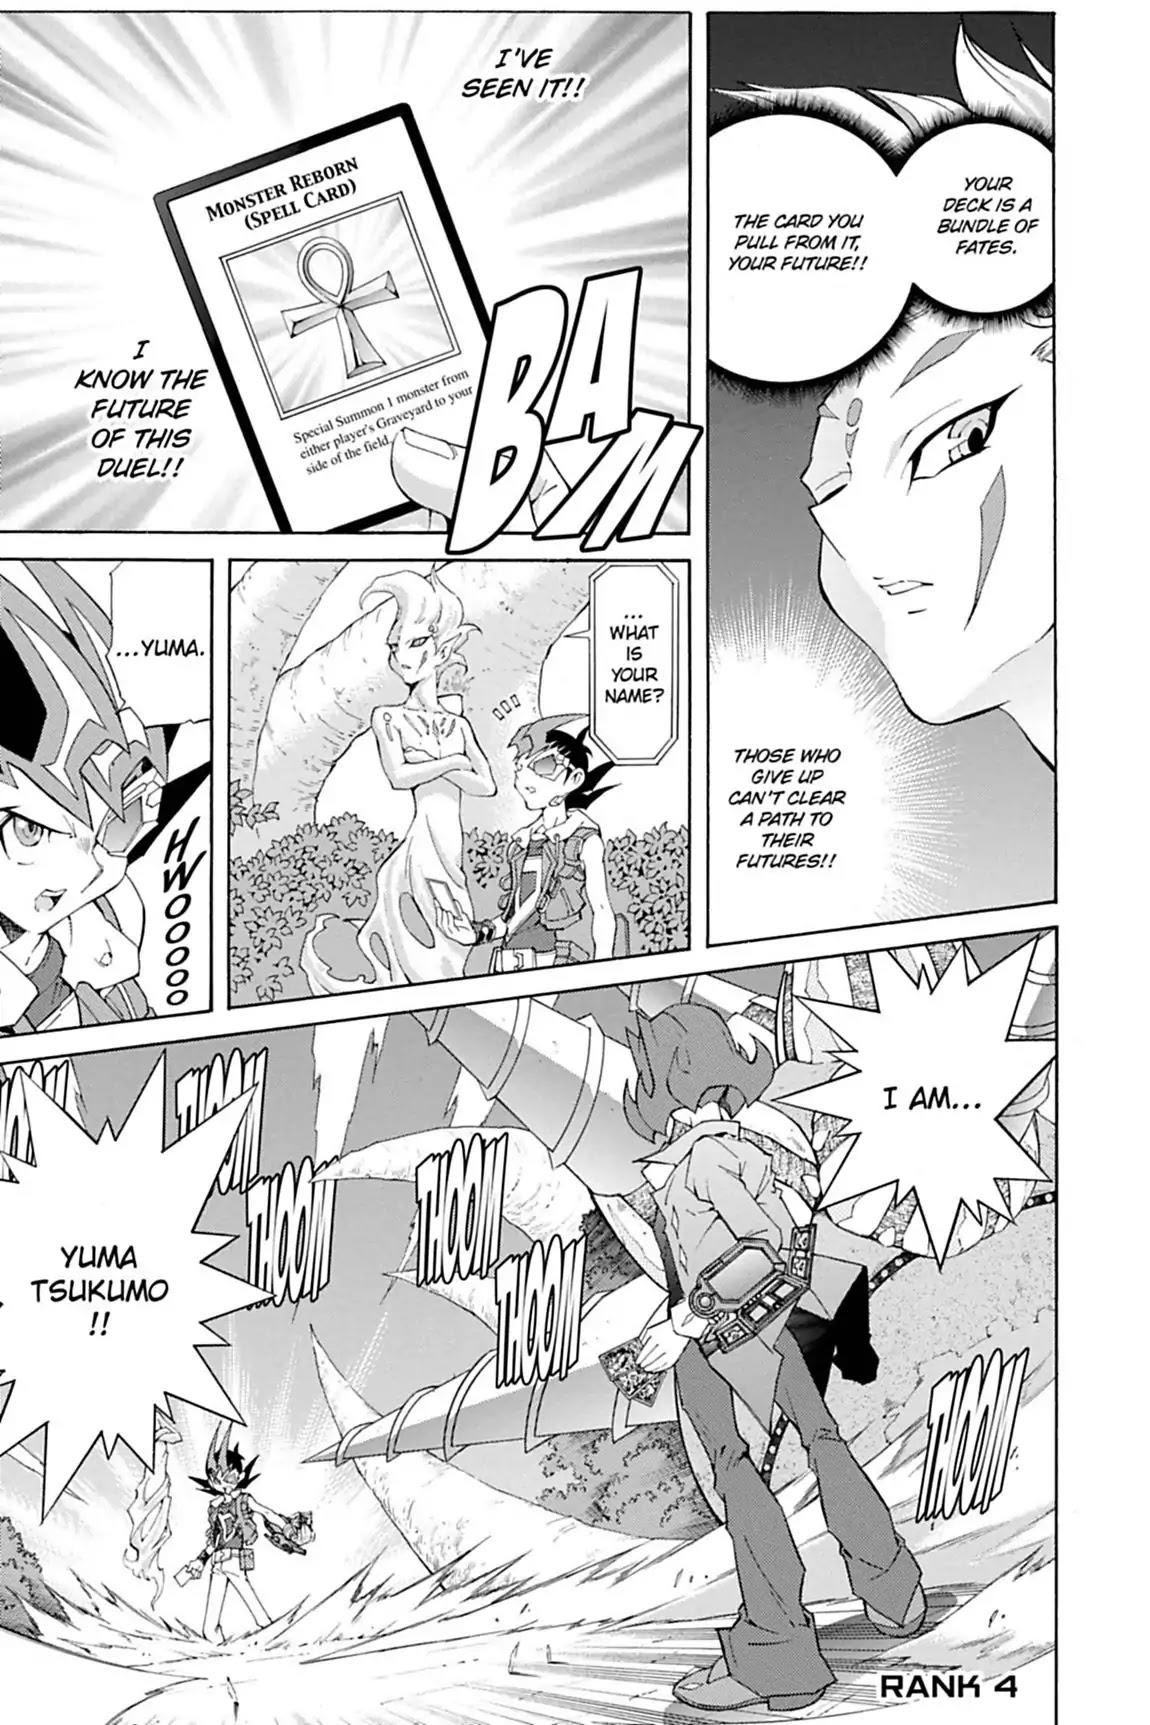 Yu-Gi-Oh! 5D's Manga Volume 5